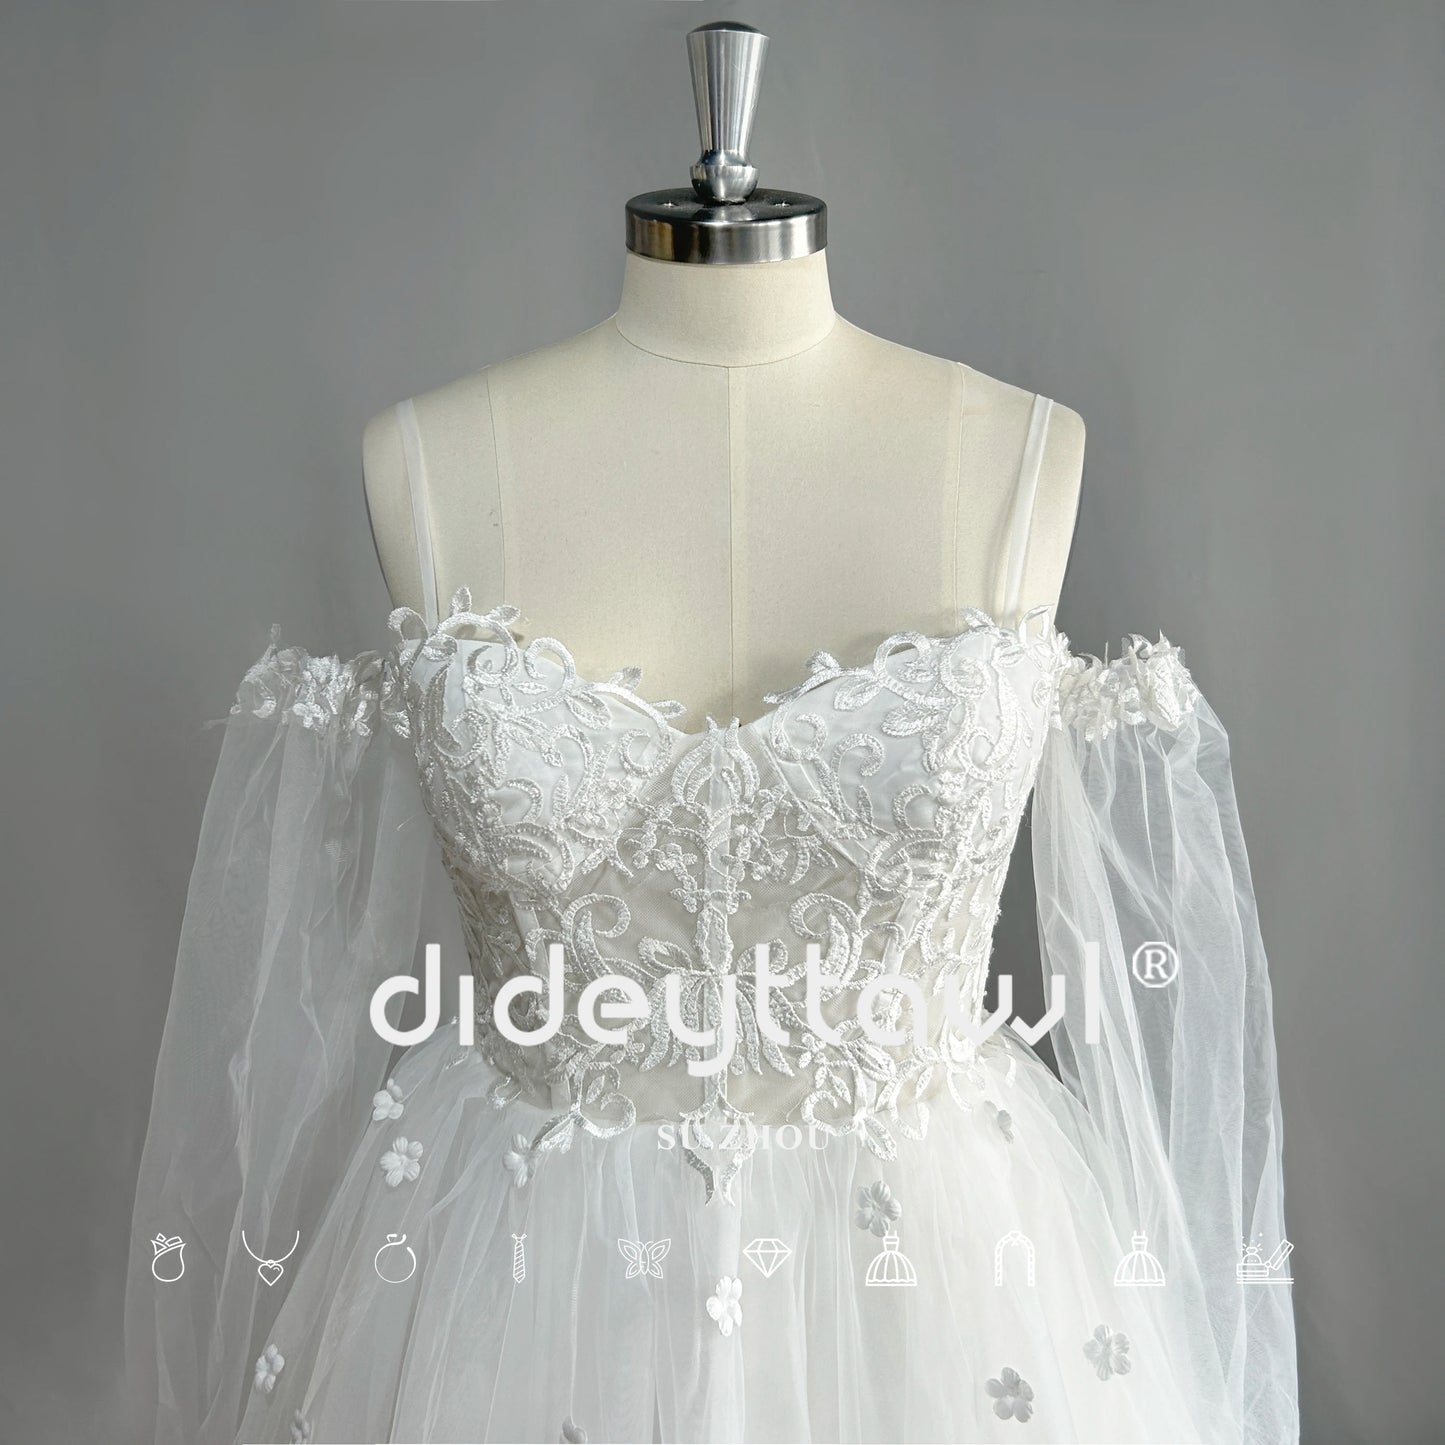 DIDEYTTAWL chérie manches longues Tulle robe de mariée courte Mini longueur épaules dénudées robe de mariée photo réelle